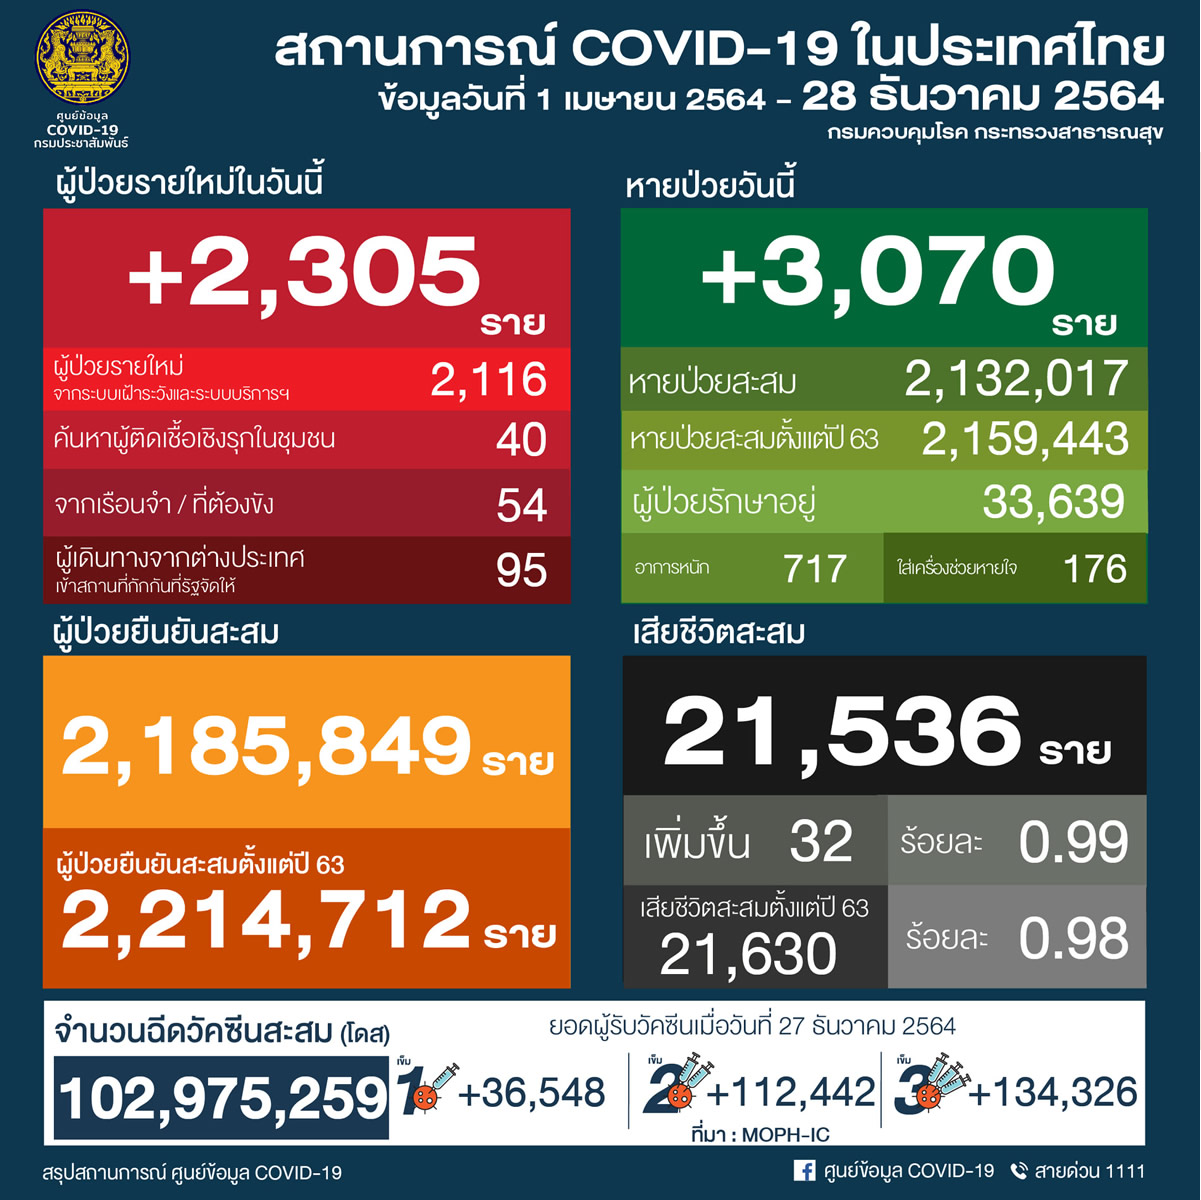 タイ 2,305人陽性 32人死亡／バンコク 392人陽性 5人死亡／チェンマイ 67人陽性［2021年12月28日発表］